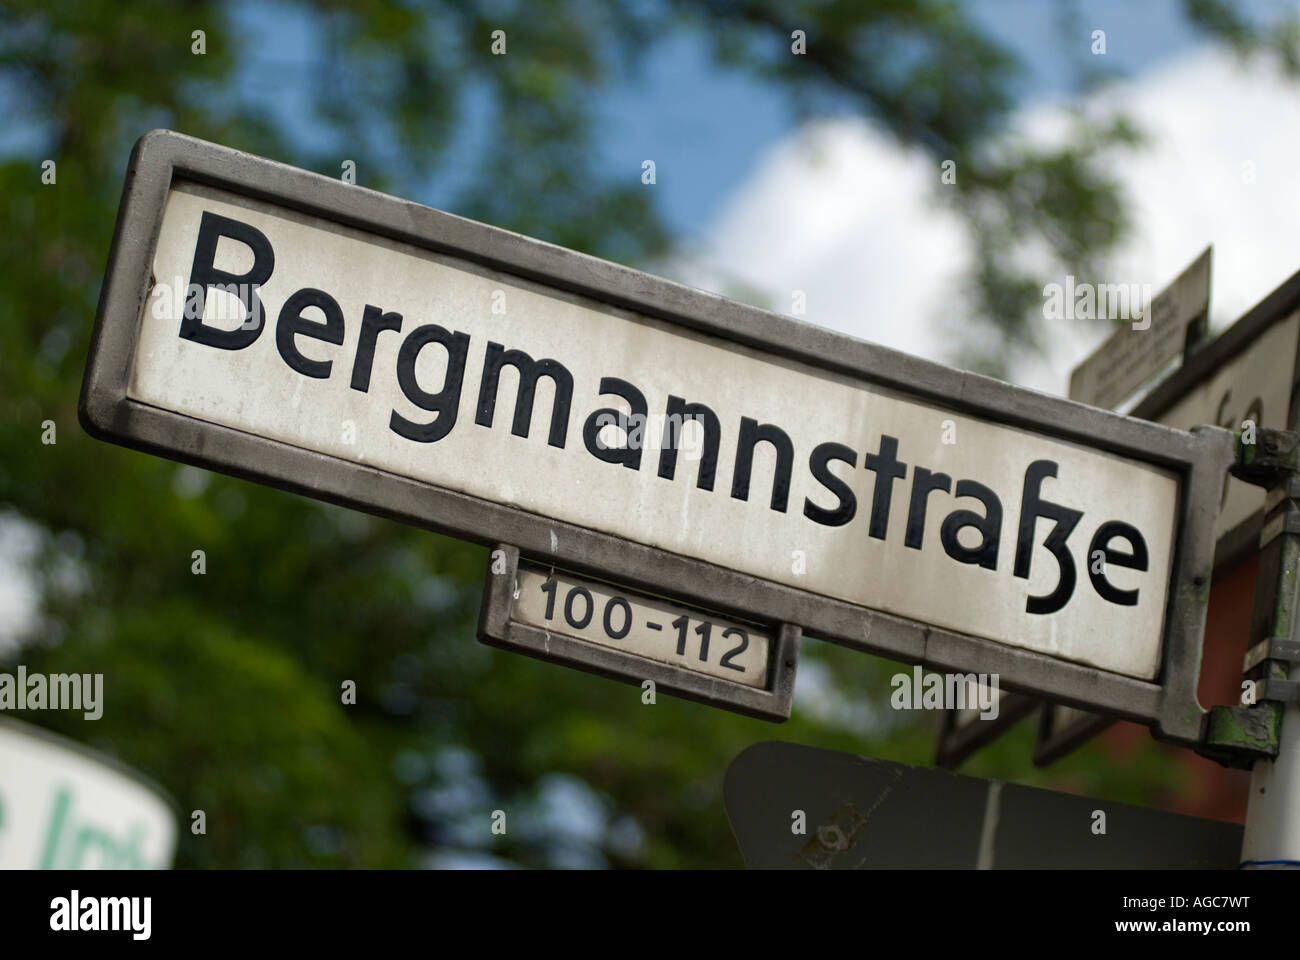 Bergmannstrasse. Road sign. Berlin. Kreuzberg. Popular street and quarter with old houses, cafés, shops and restaurants. Stock Photo